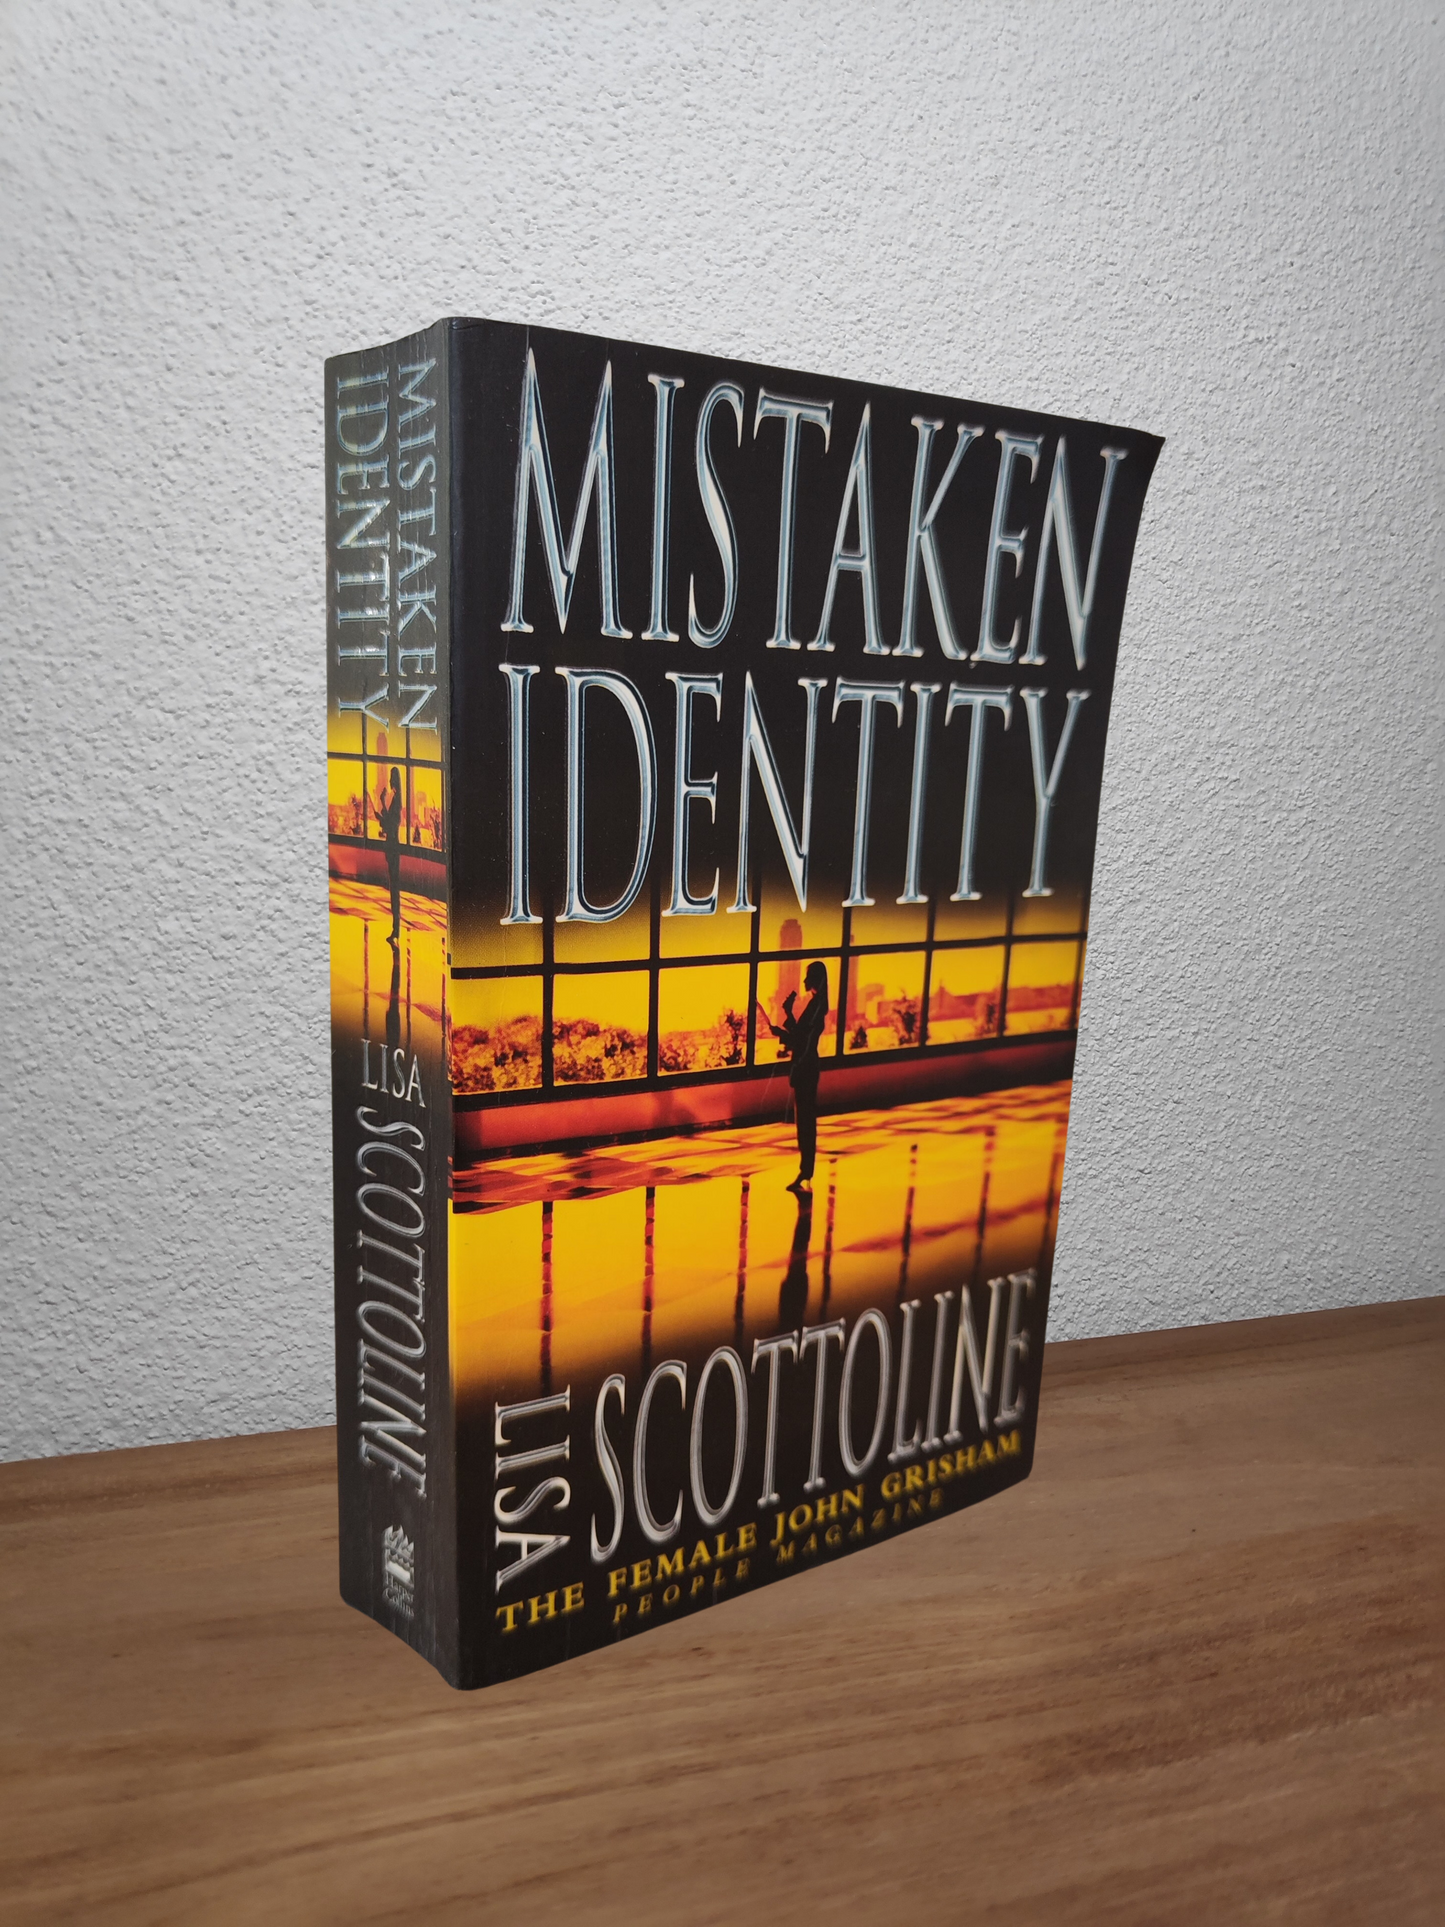 Lisa Scottoline - Mistaken Identity (Rosato and Associates #4)